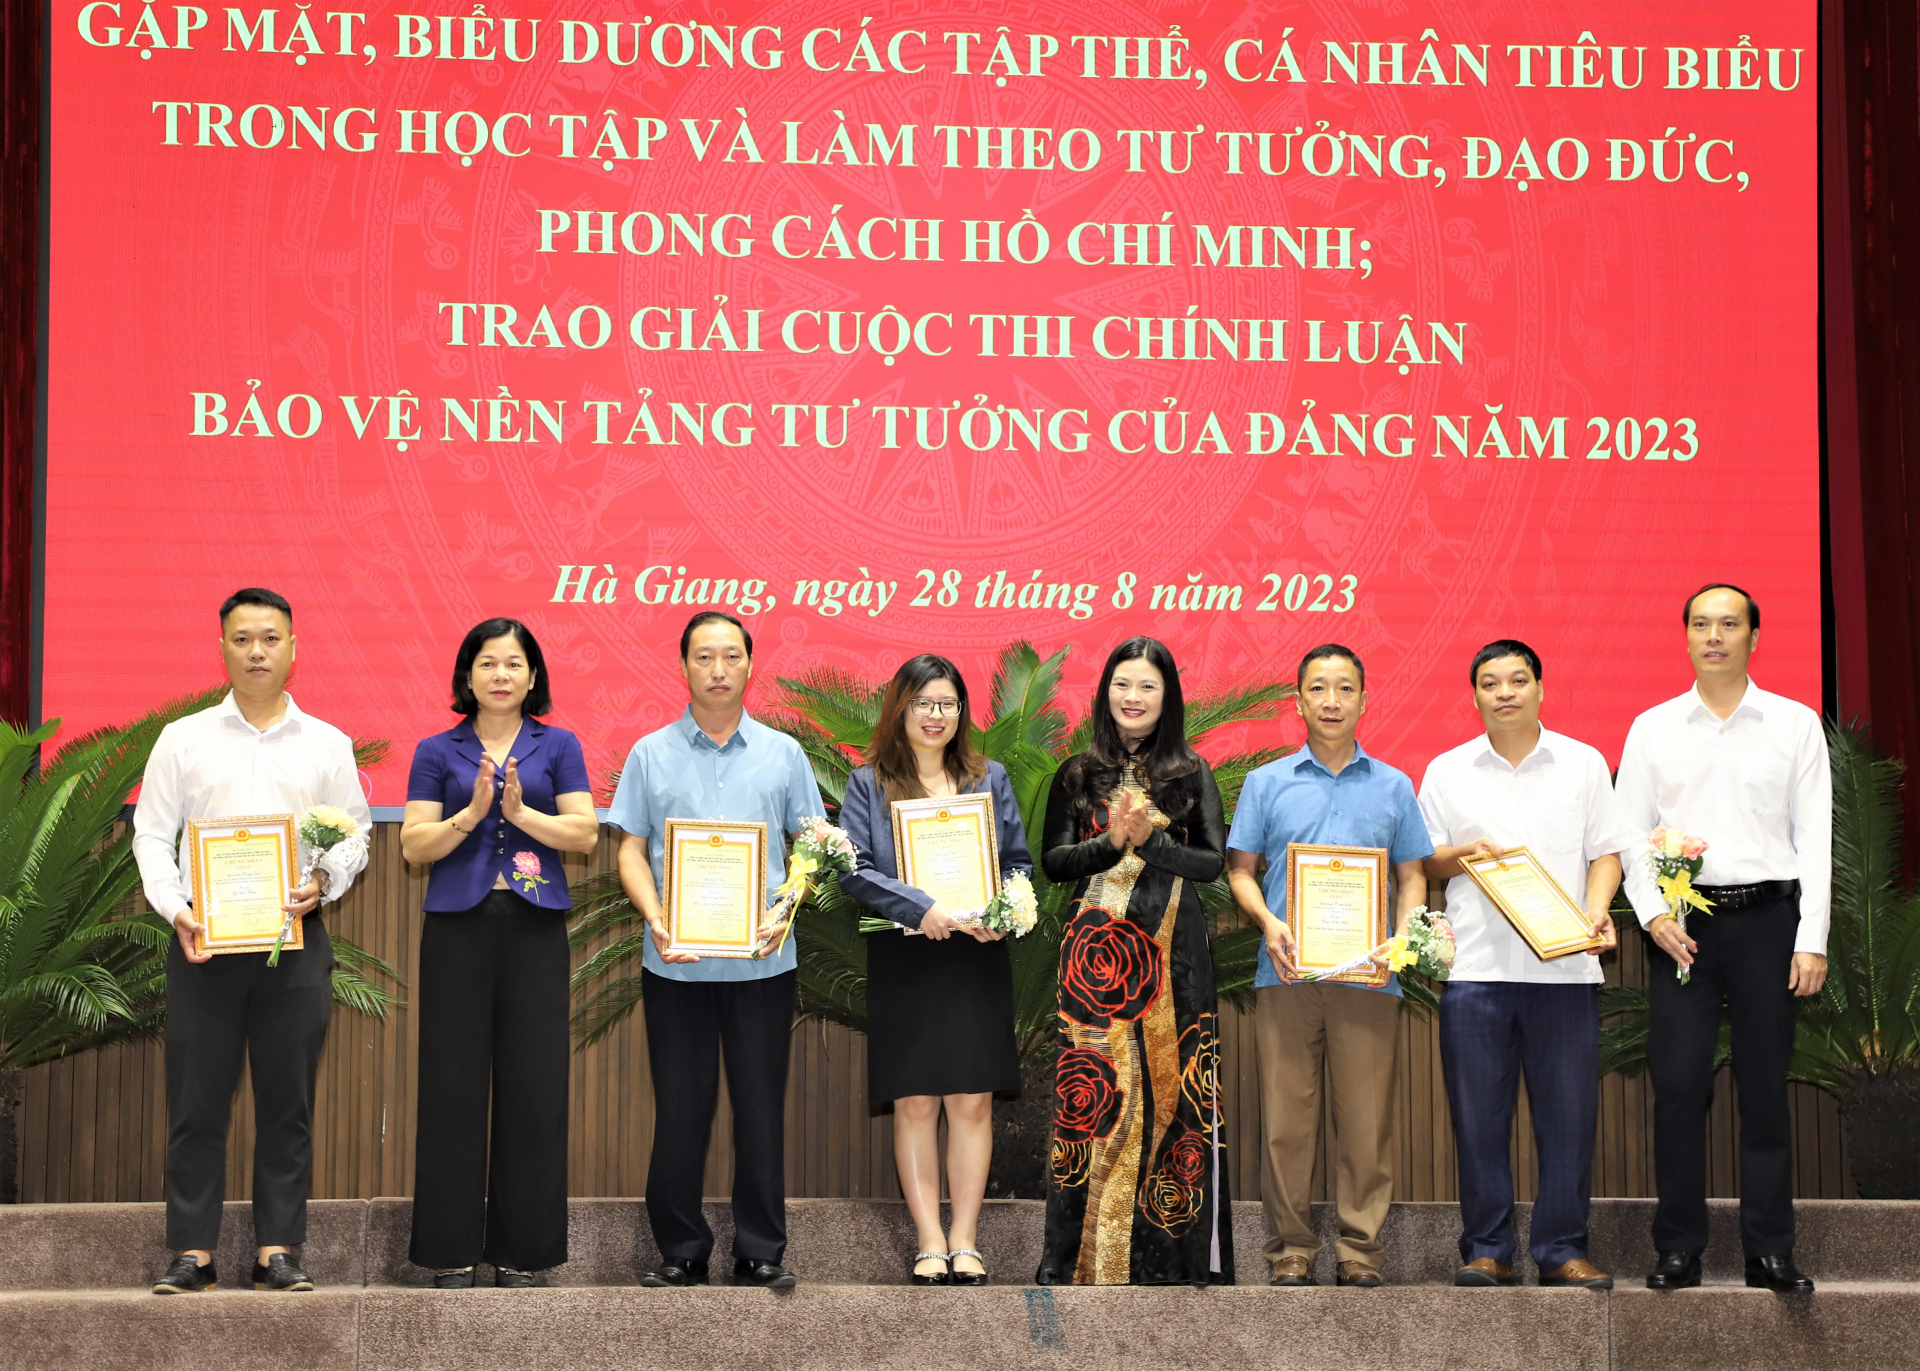 Phó Chủ tịch Thường trực HĐND tỉnh Chúng Thị Chiên và Trưởng ban Tuyên giáo Tỉnh ủy Vương Ngọc Hà trao giải C cuộc thi Chính luận cho các tác giả.